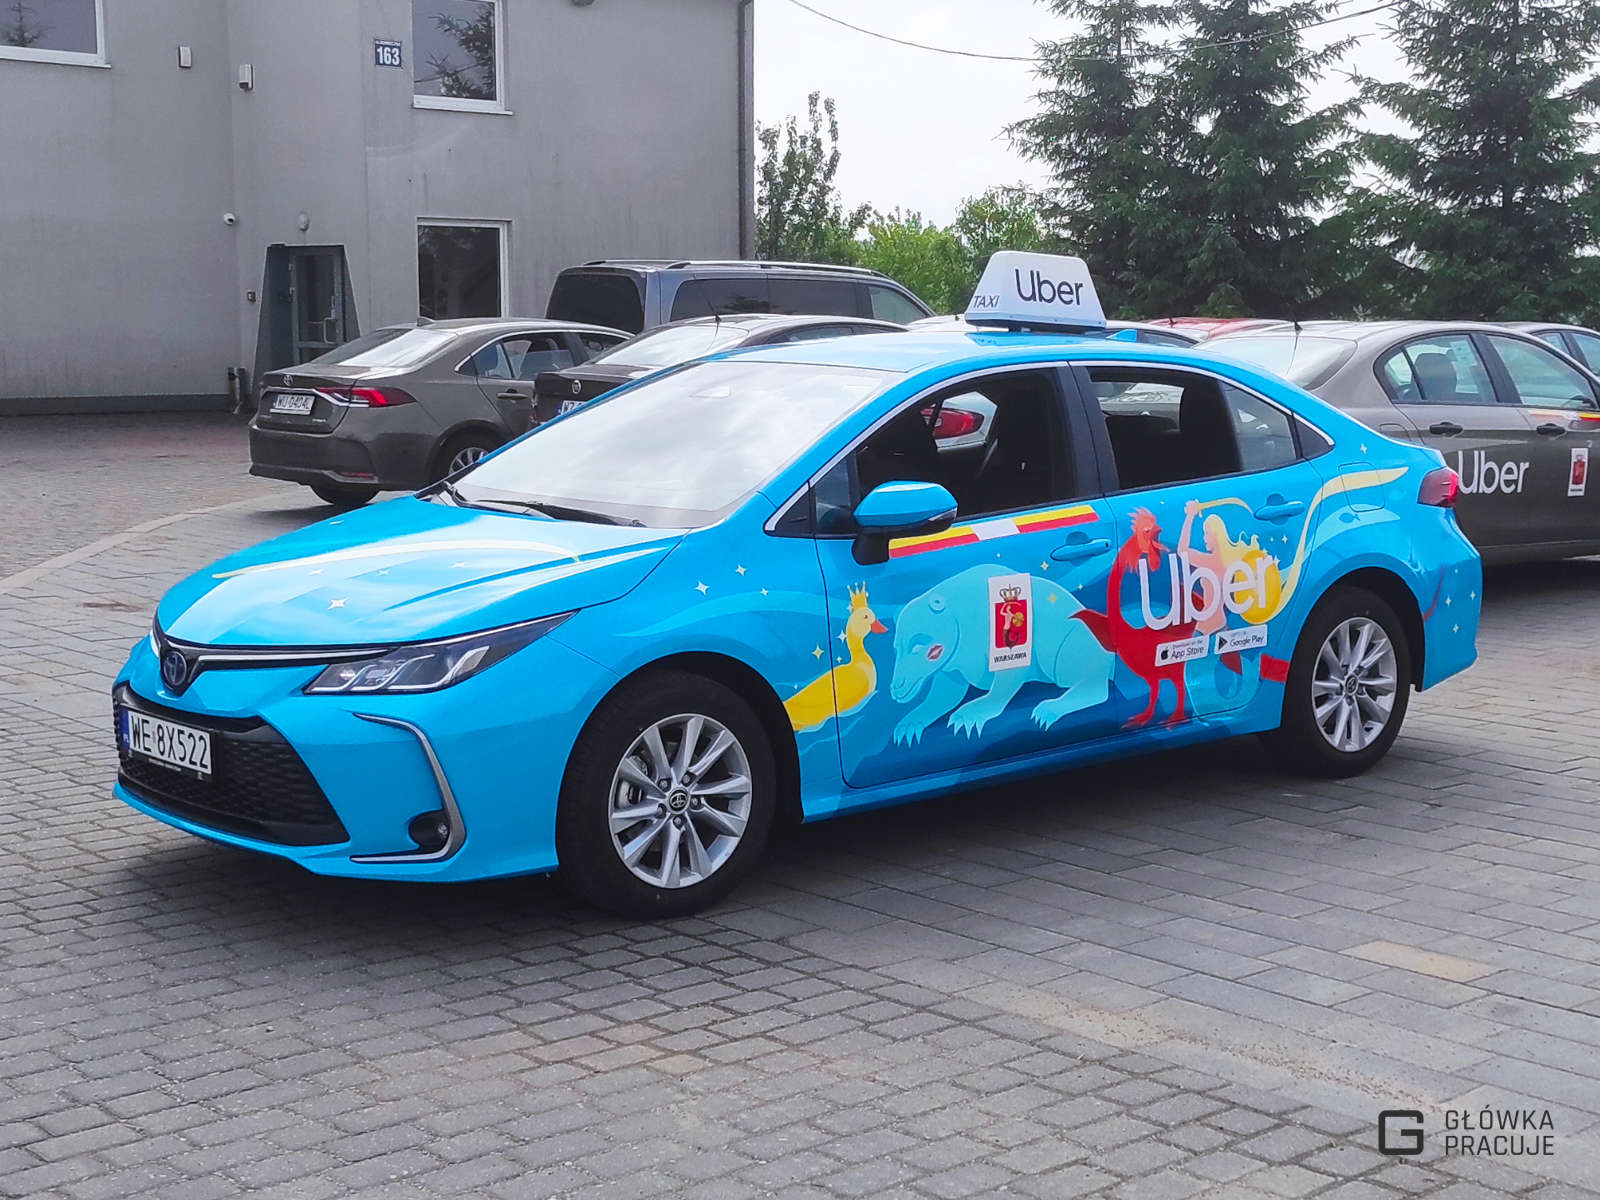 Główka Pracuje - folia samochodowa z grafiką Warsaw Legends dla firmy Uber wyklejona na karoserii auta - Warszawa